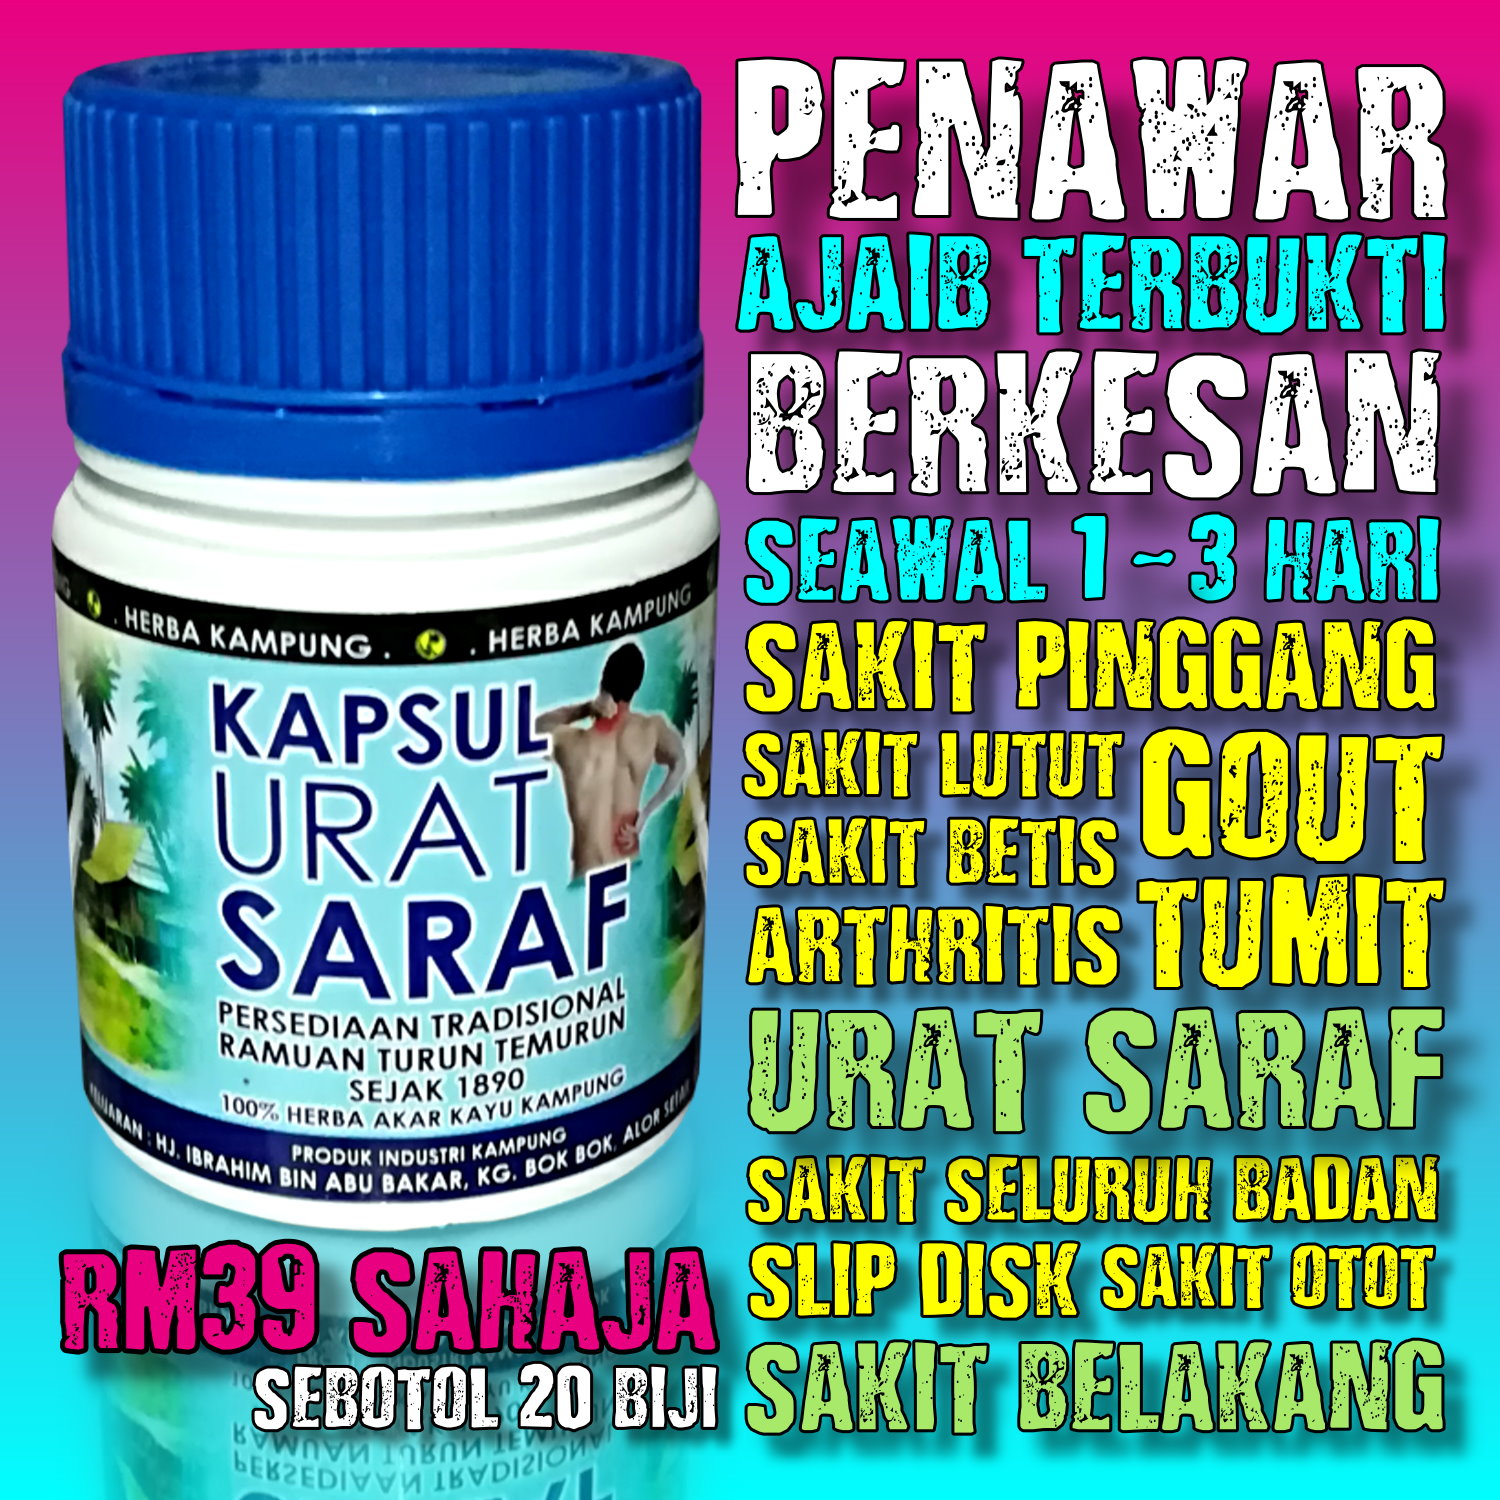 Kapsul Urat Saraf ( 100% Herba Akar Kayu Kampung )